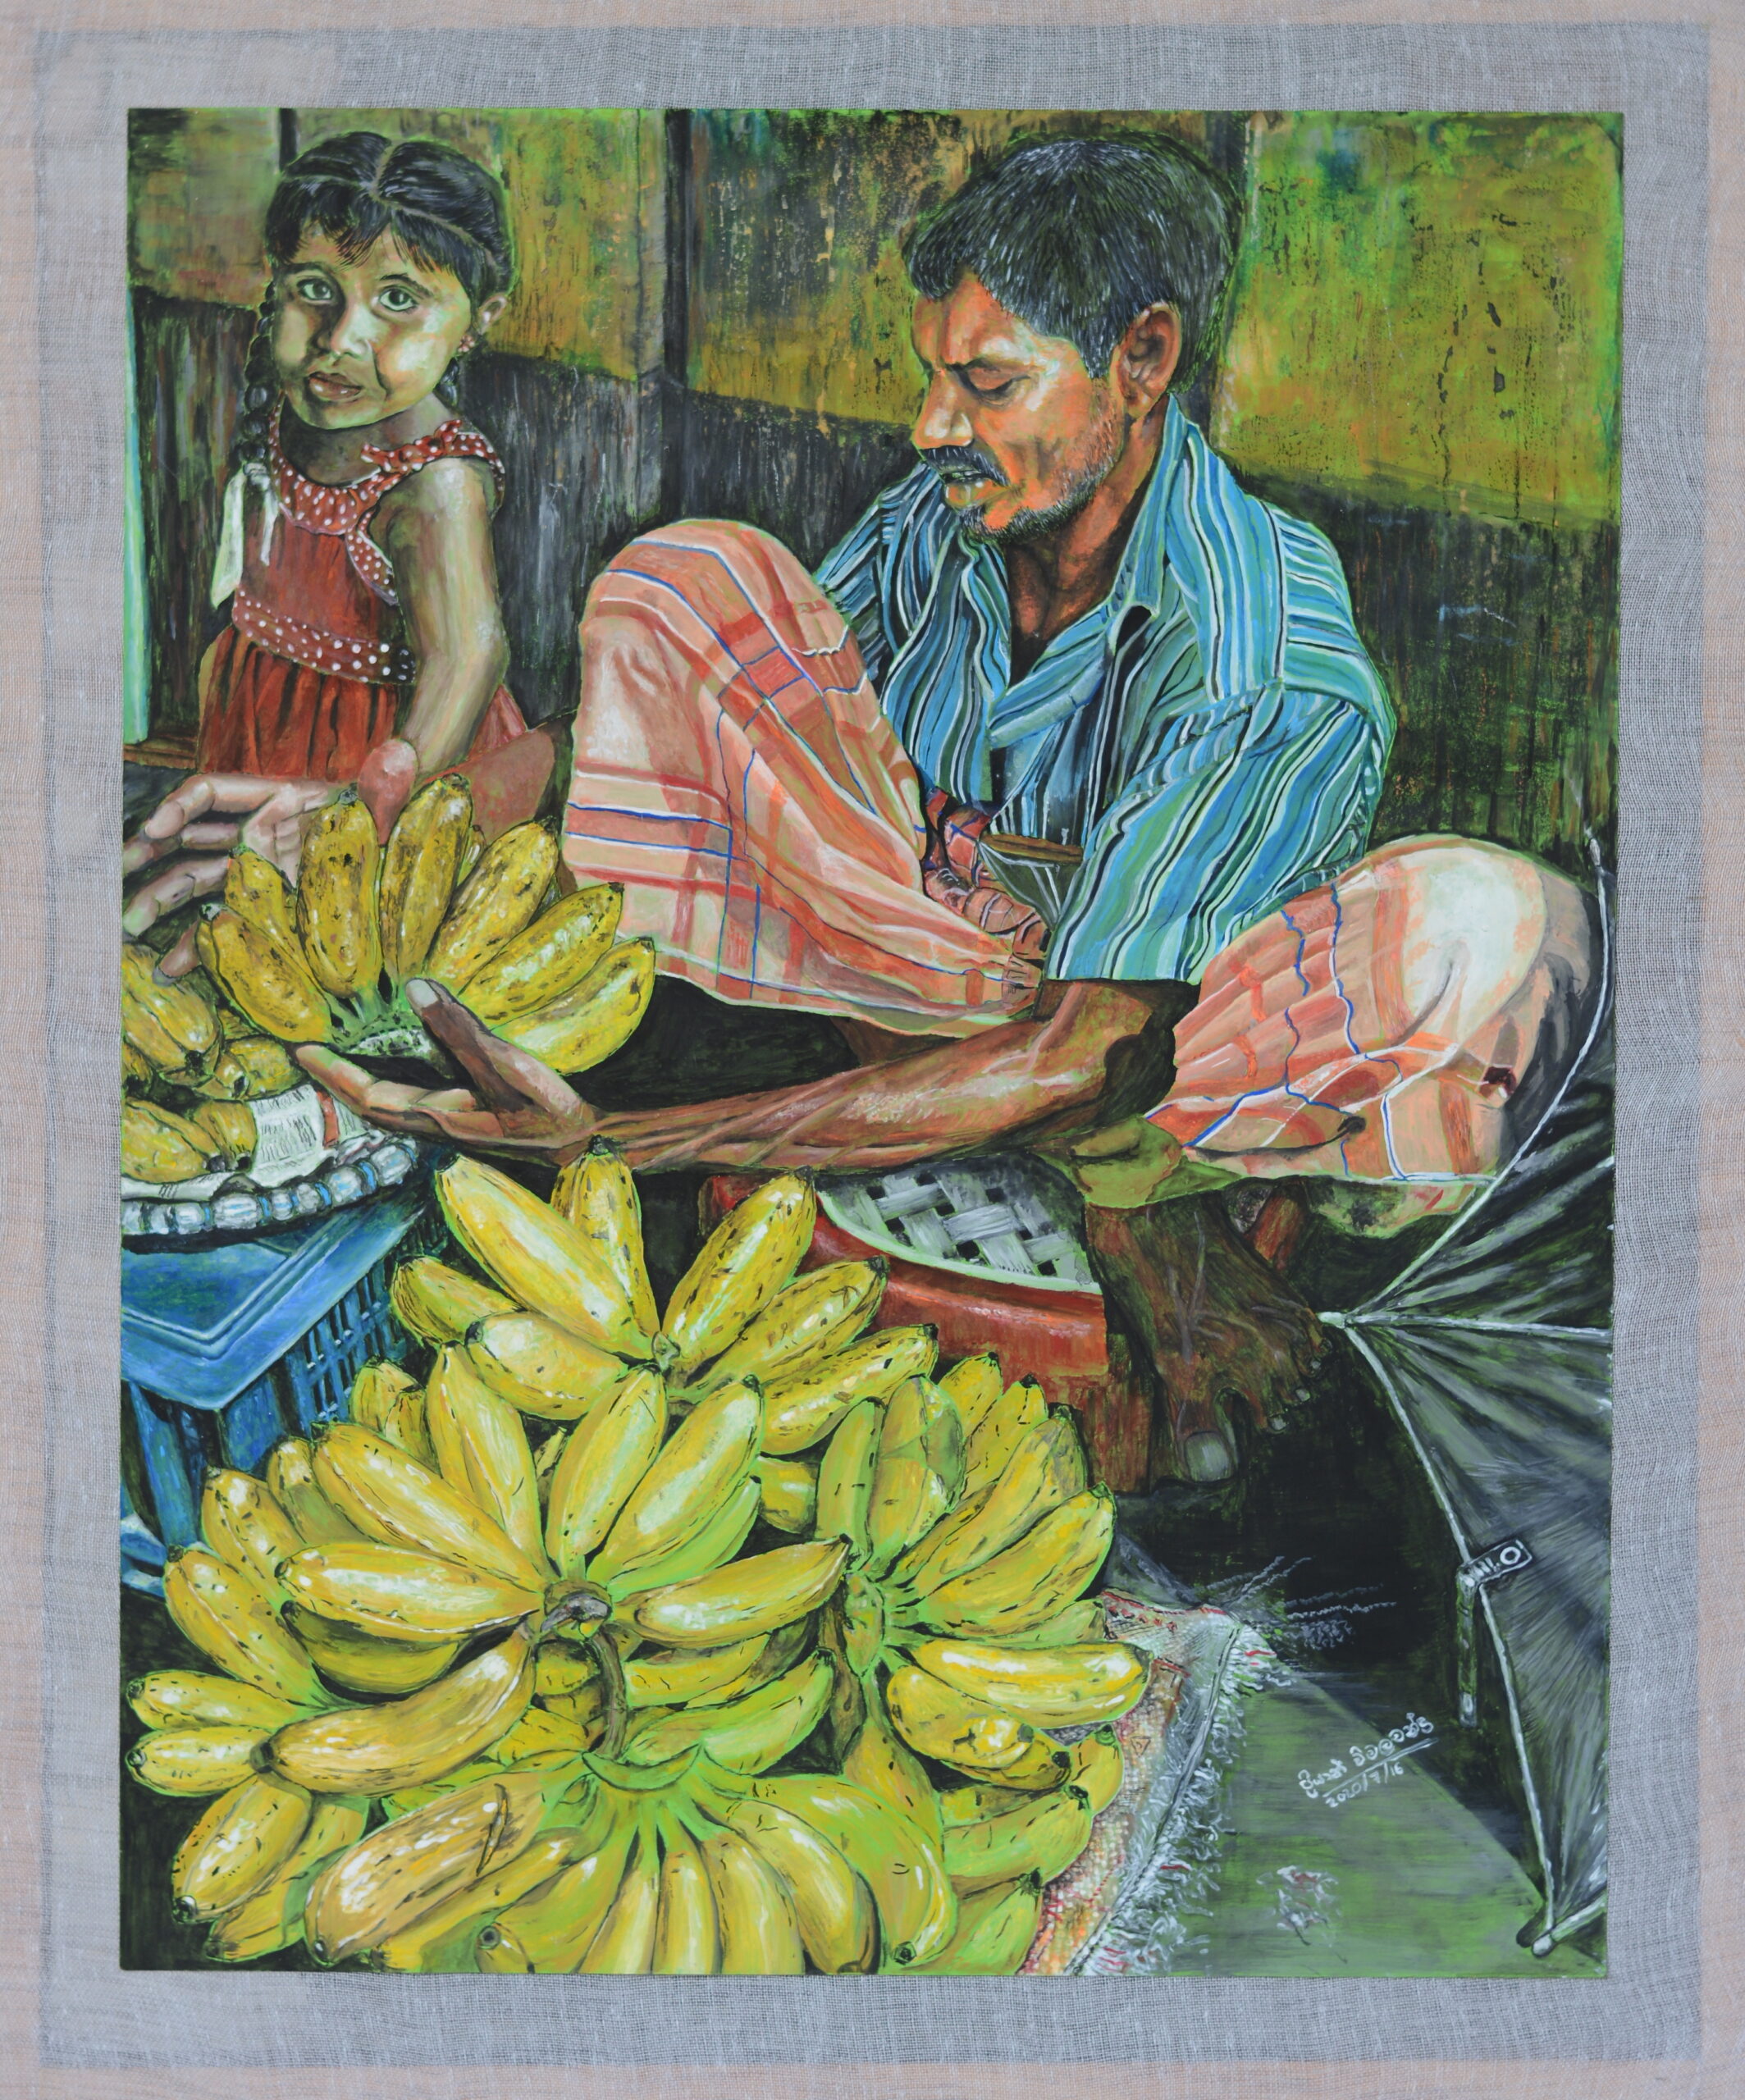 Banana seller and his daughter_Priyan Wimalachandra